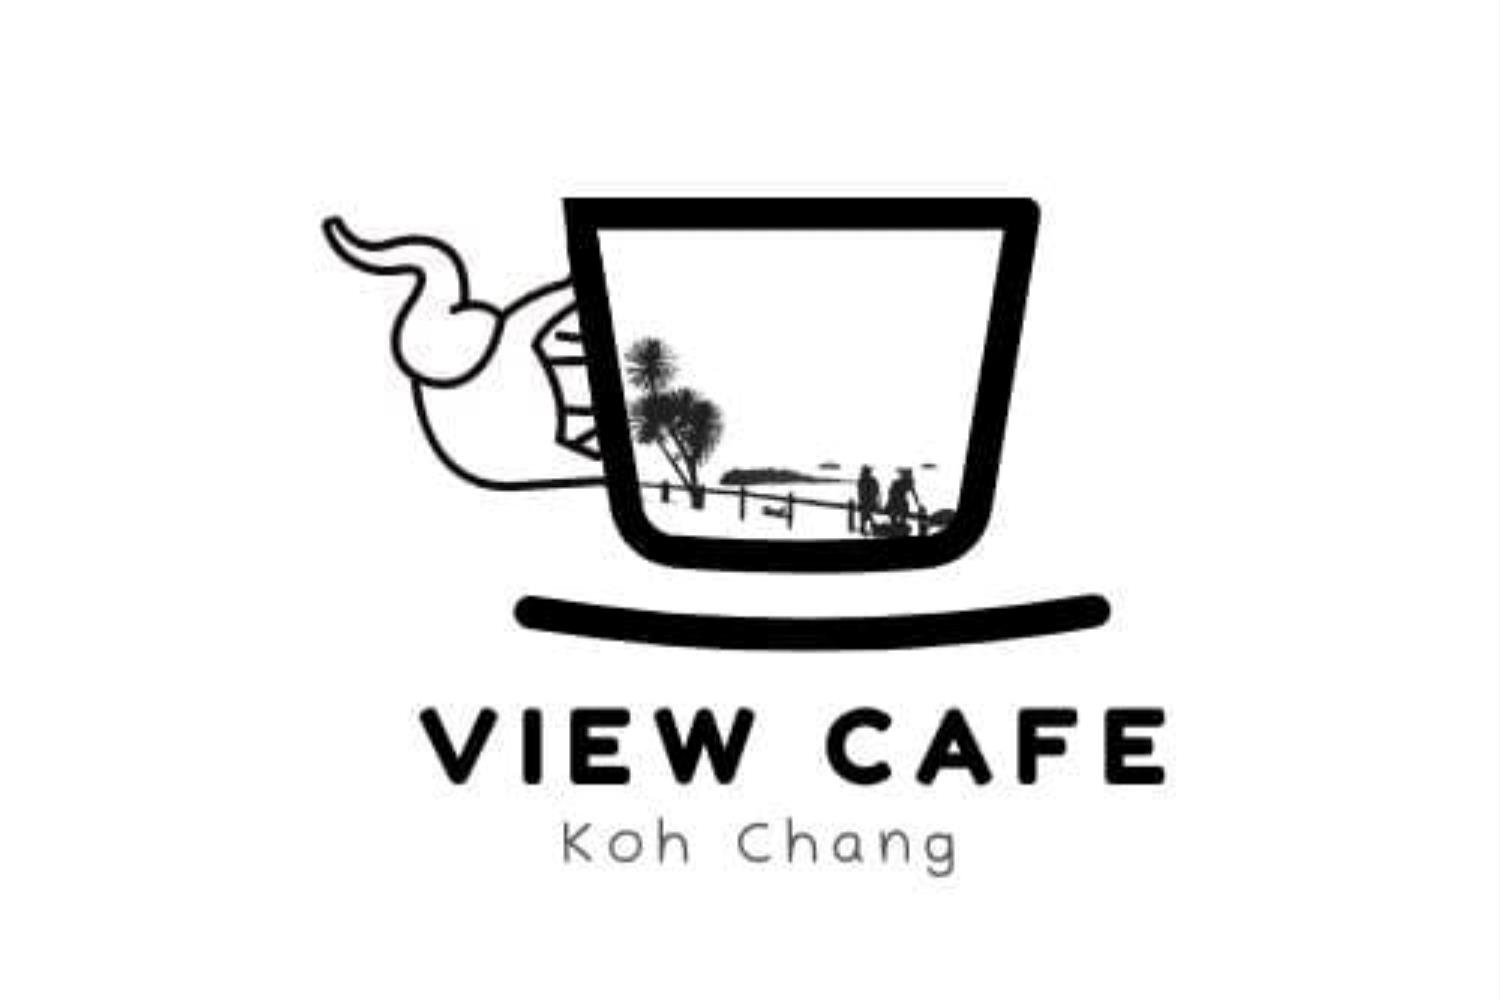 Viewcafe Kohchang